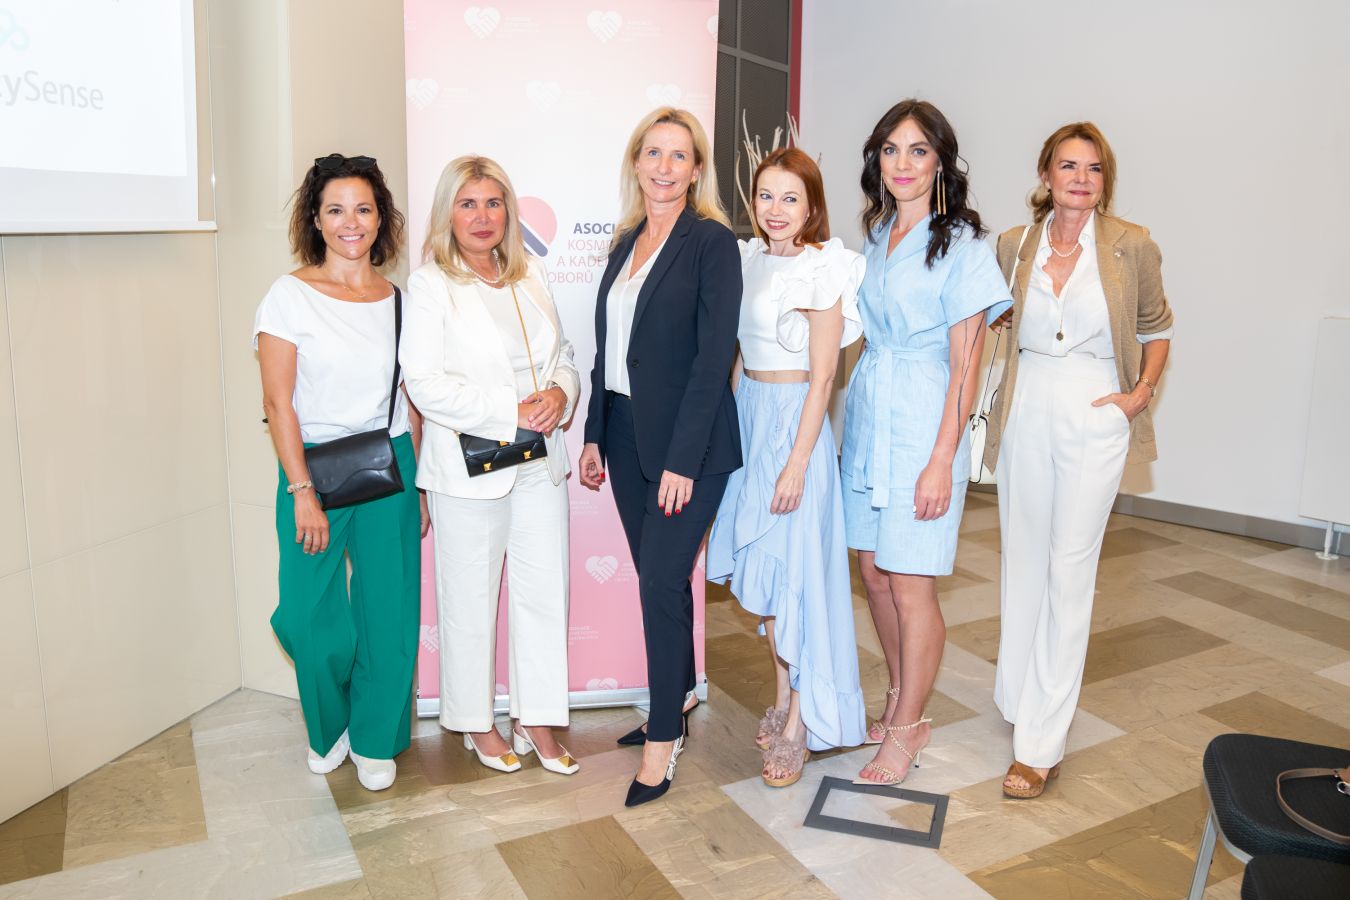 Známé české ženy podpořily jsou pro zkvalitňování služeb českých salonů krásy